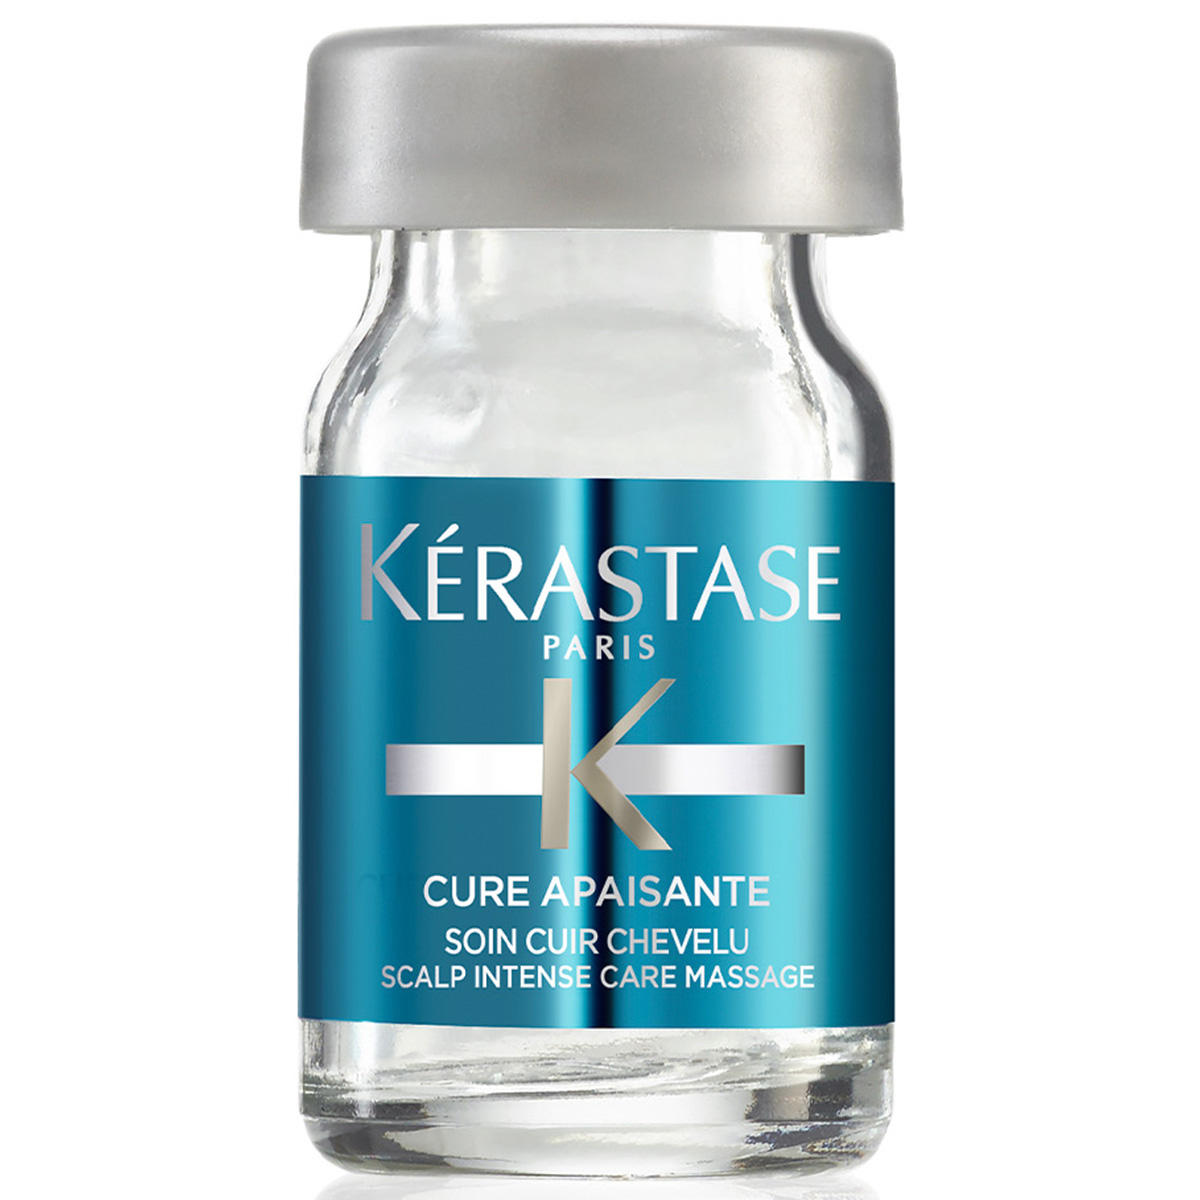 Kérastase Spécifique Cure Apaisante Confezione con 12 x 6 ml